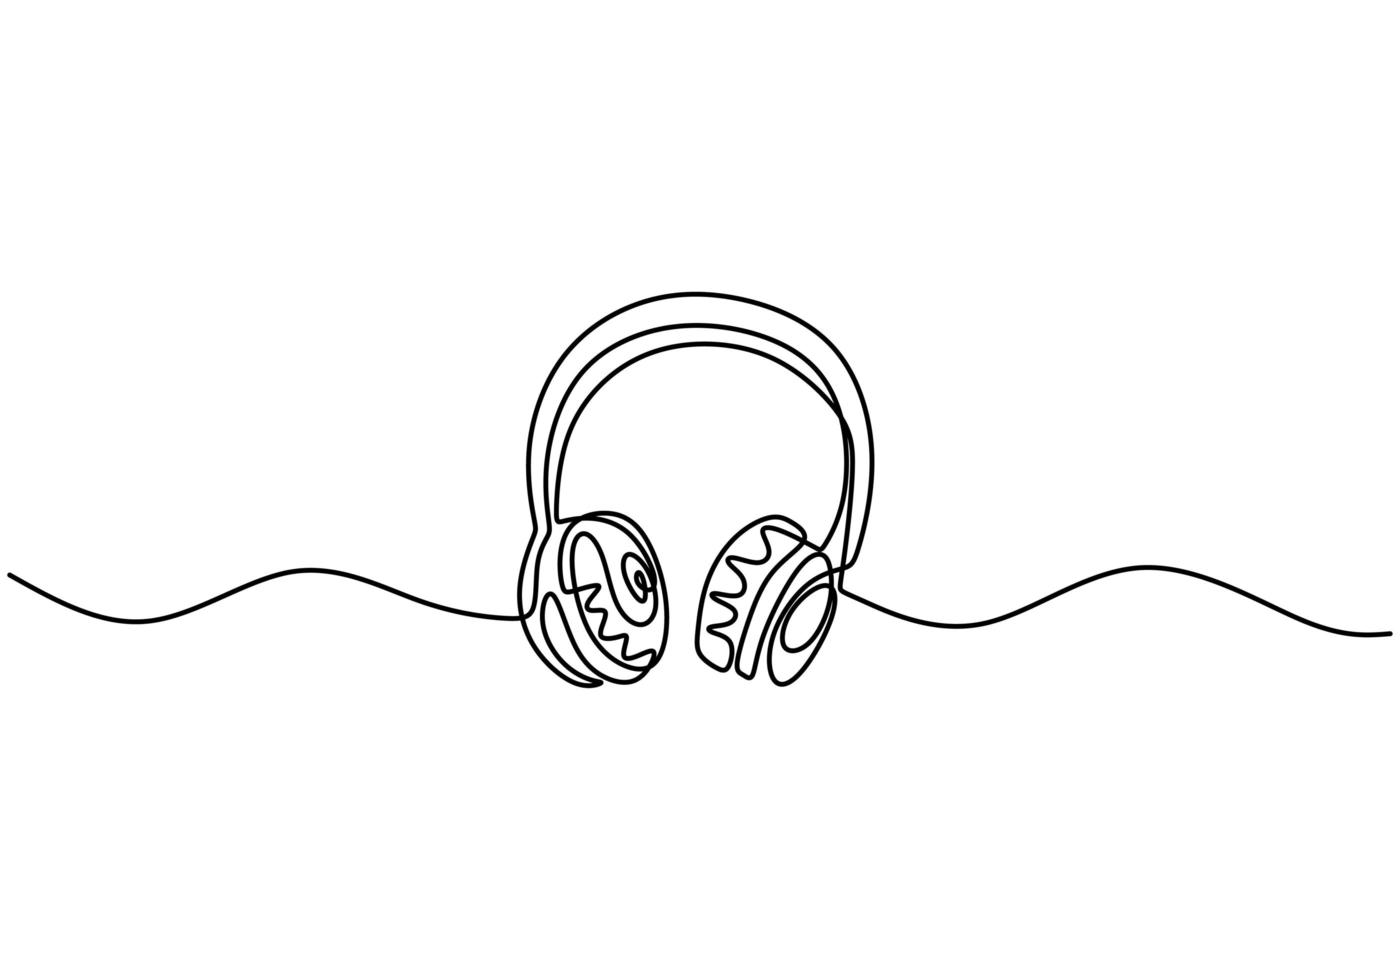 en linje ritning av hörlurar högtalare, enhet gadget kontinuerlig handritad kontur design, isolerad på vit bakgrund vektor